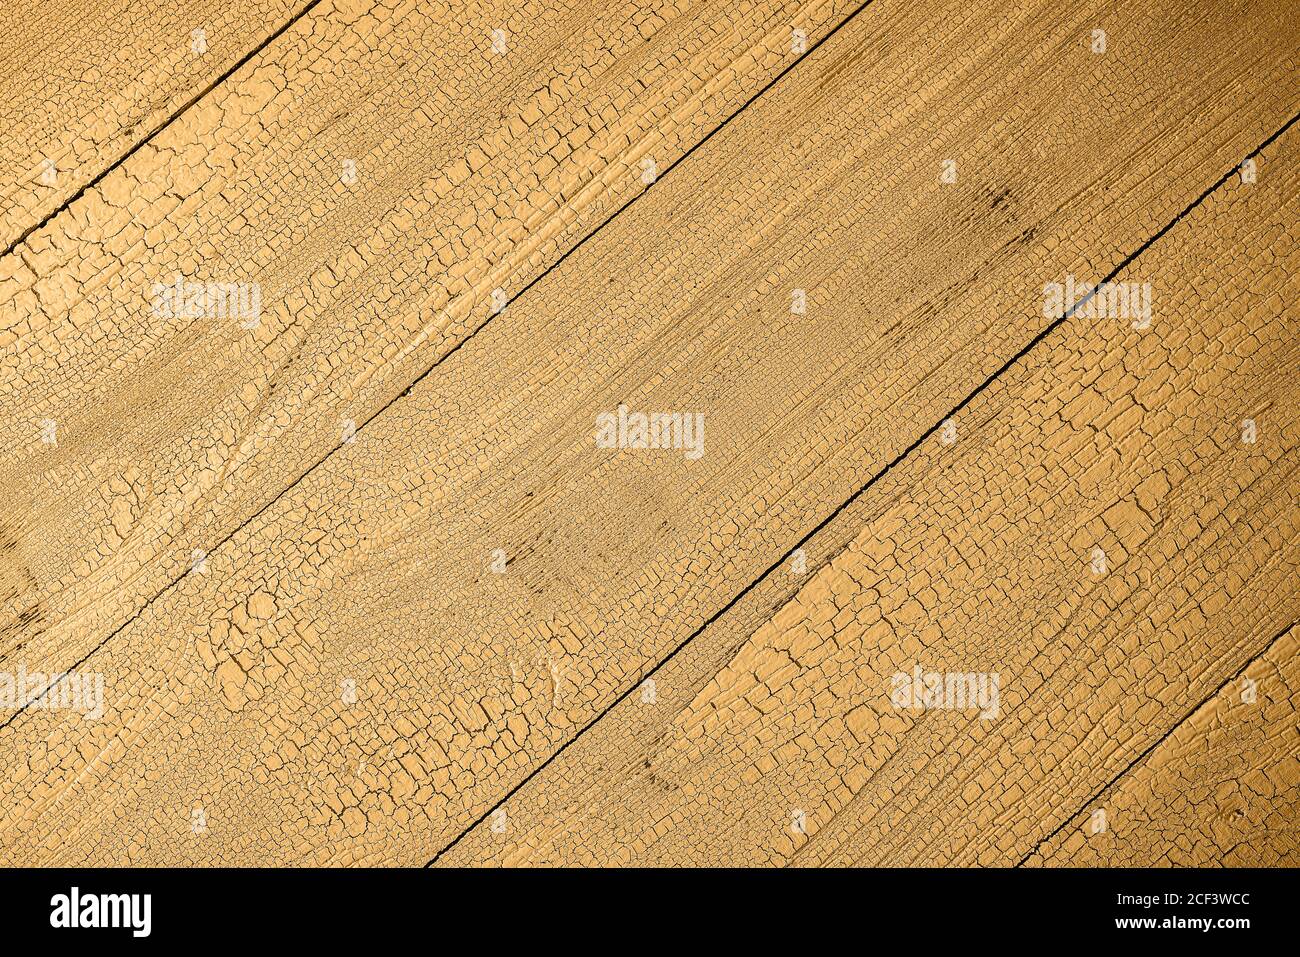 Natürliche Holzdielen in Honig dijon Farbe mit Craquelure-Effekt getönt. Diagonalboarding. Speicherplatz kopieren. Blick von direkt oben. Stockfoto